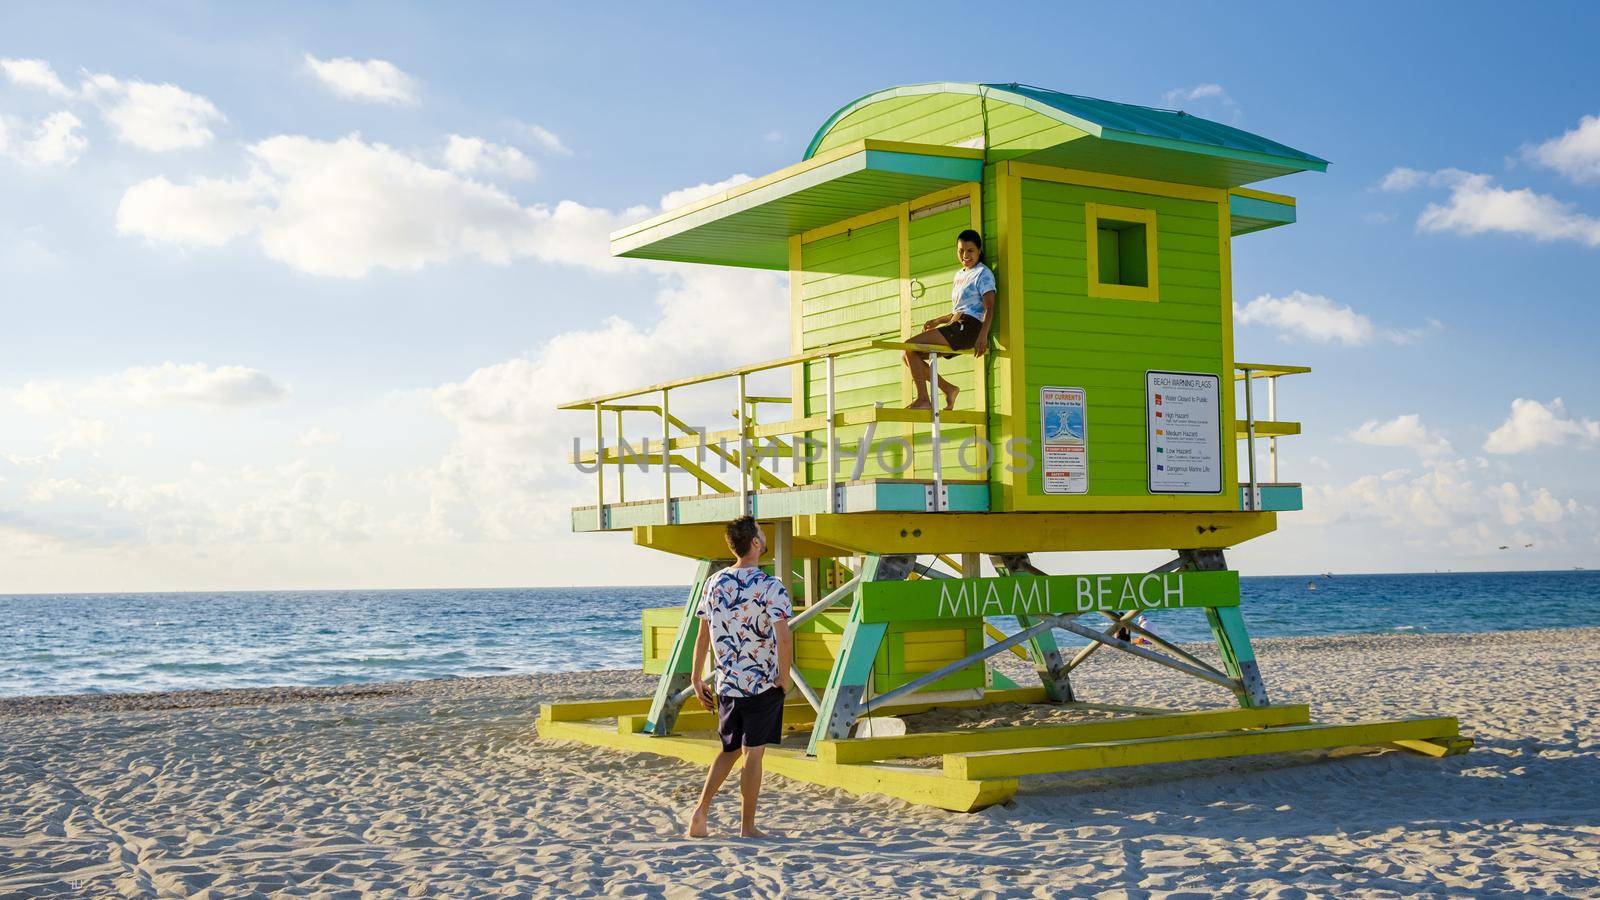 Miami beach, couple on the beach at Miami beach, life guard hut Miami beach Florida by fokkebok